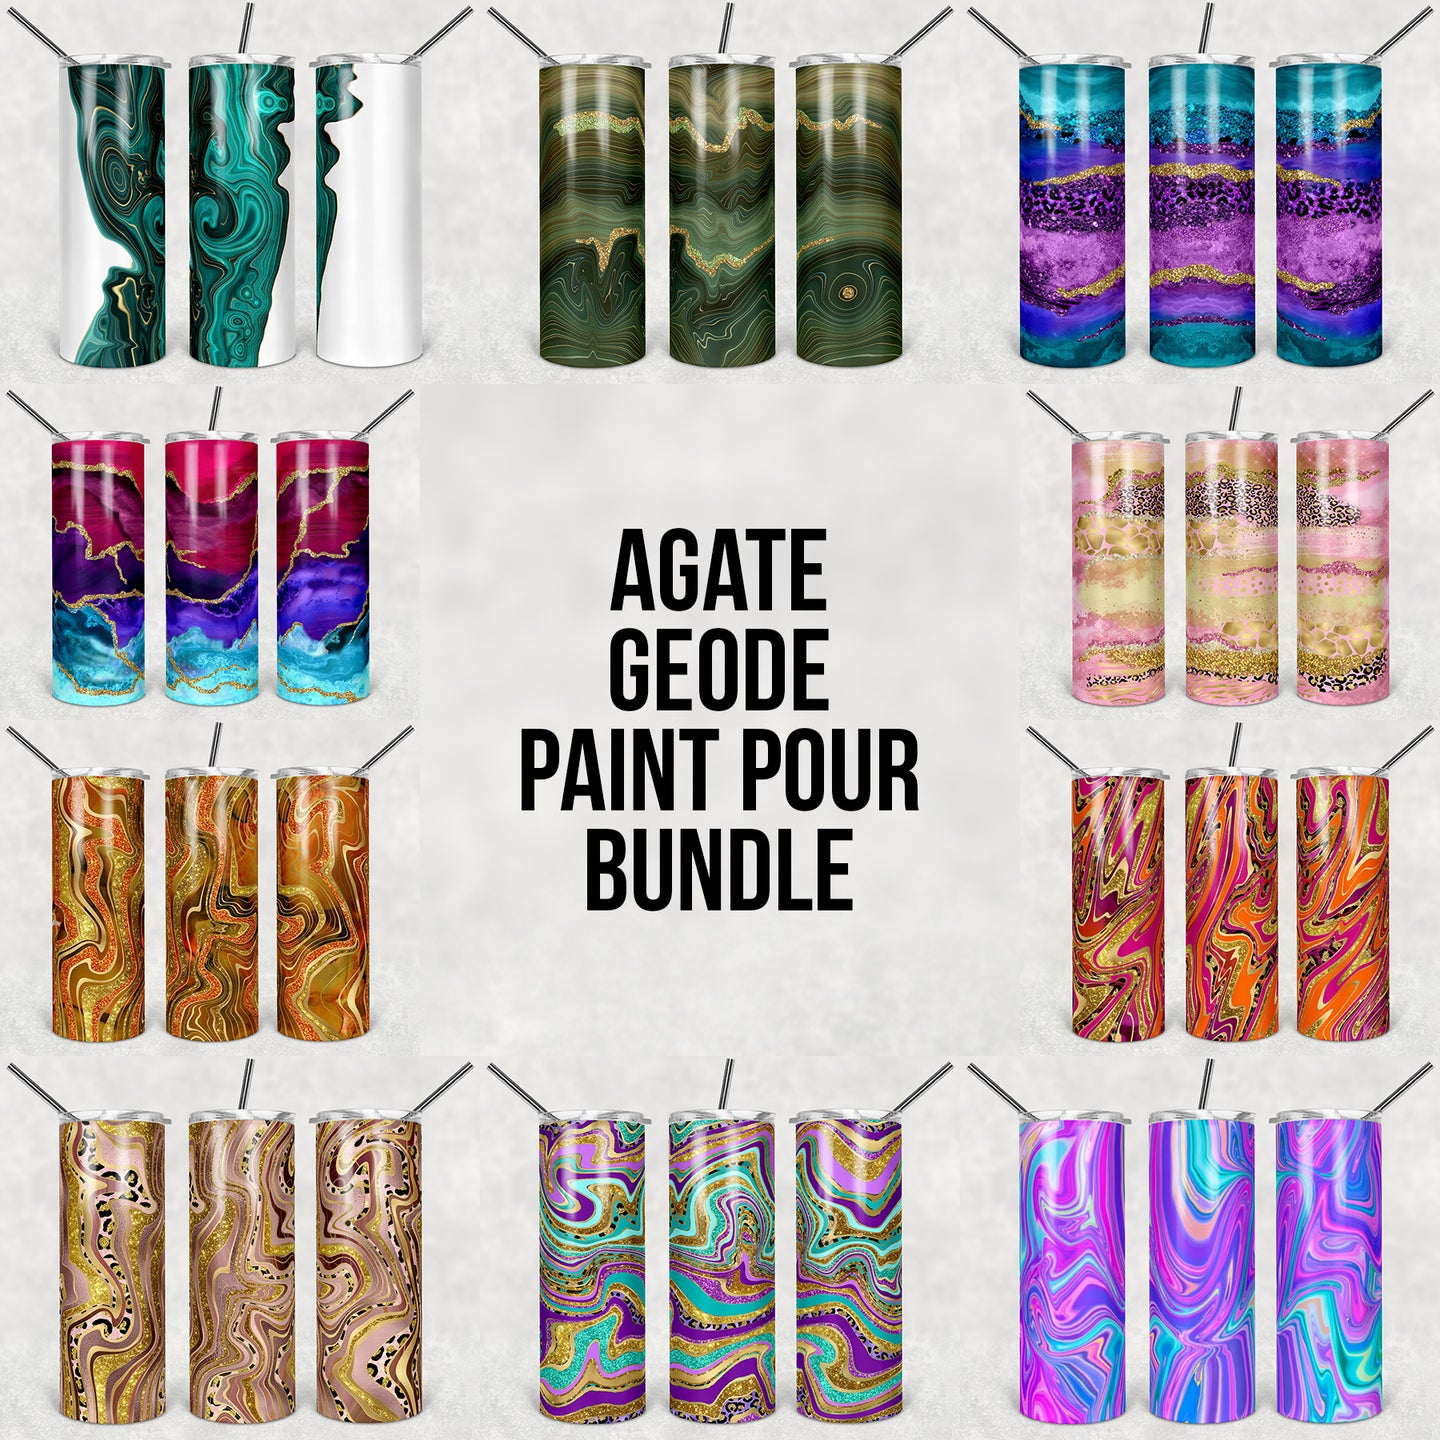 Agate Geode Paint Pour Bundle - Limited Time